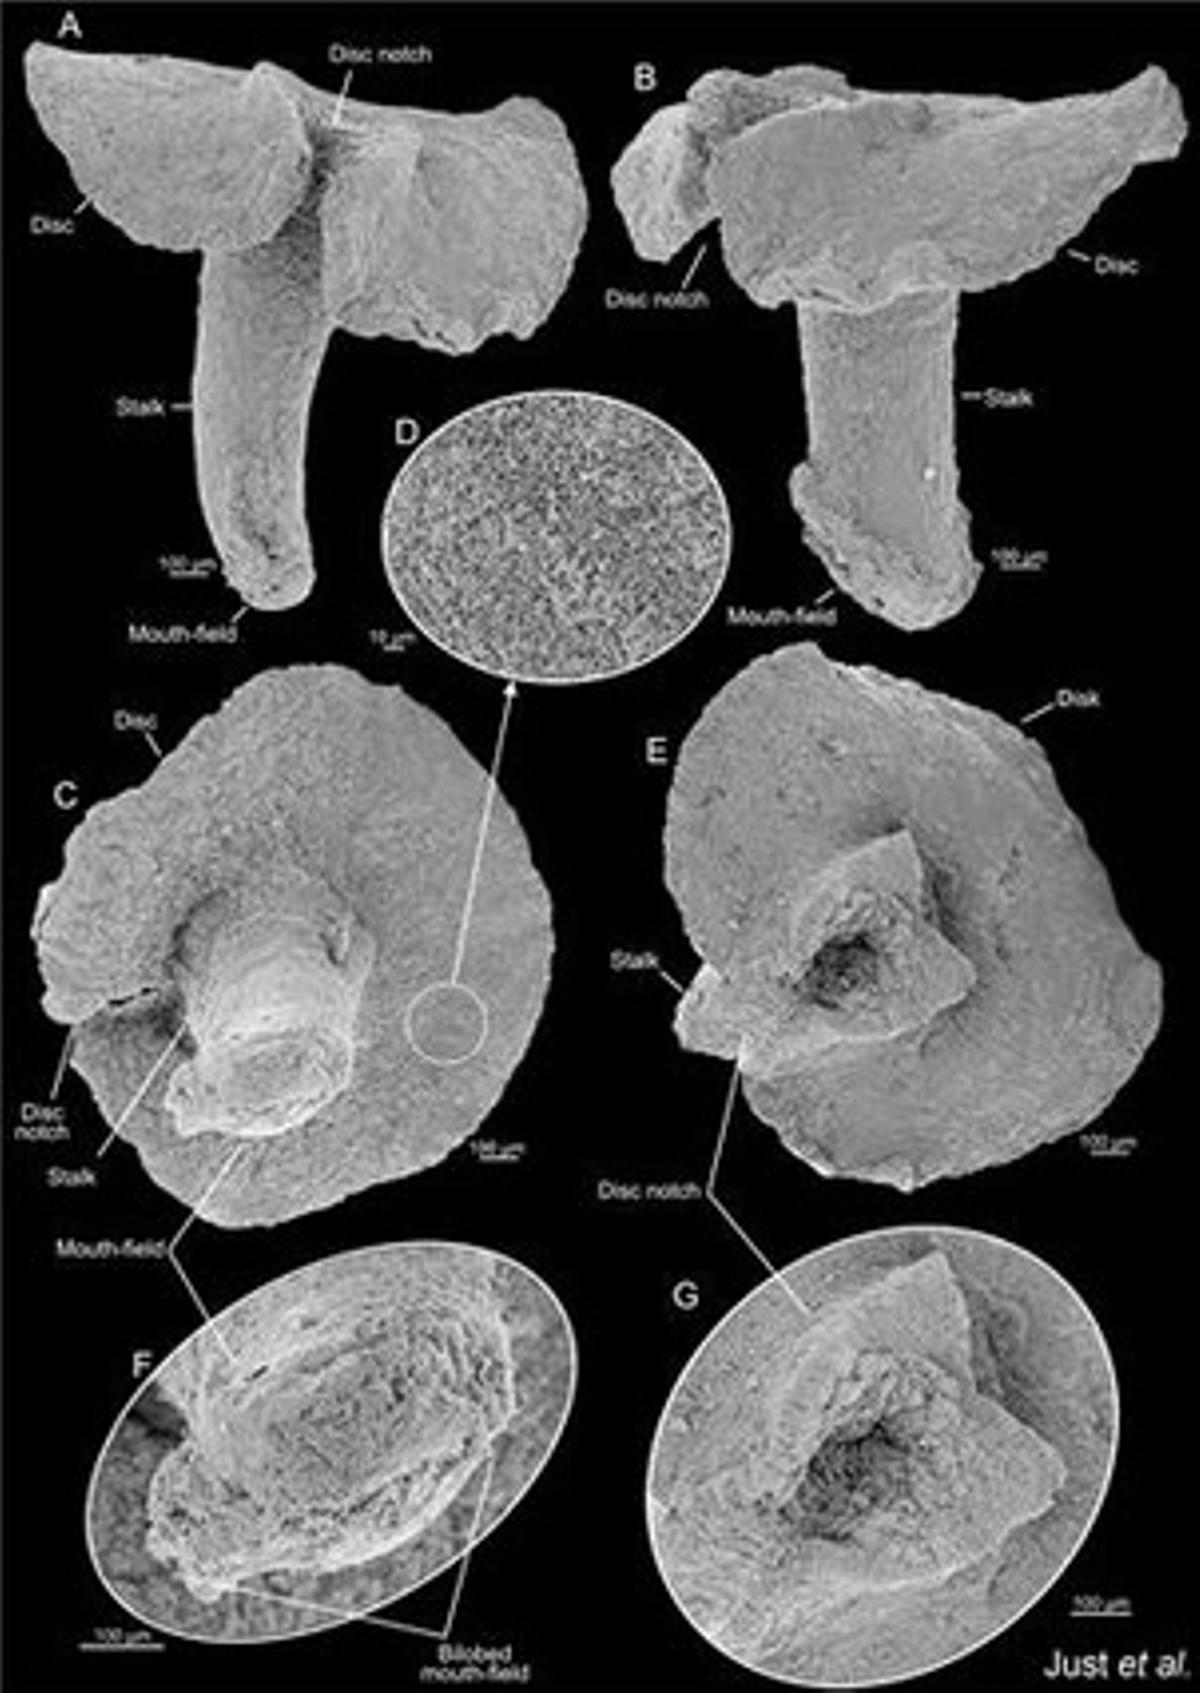 Aparentemente relacionados con las medusas y los corales, los ’Dendrogramma enigmaticas’ son pequeños animales parecidos a las setas, con una boca en el extremo del ‘tallo‘ y el otro extremo con la forma de un disco aplanado. Se encontraron en los fondos marinos de Point Hicks (Australia) a más de 1.000 metros de profundidad. Miden de 8 mm de largo y el disco superior apenas supera los 10 mm.